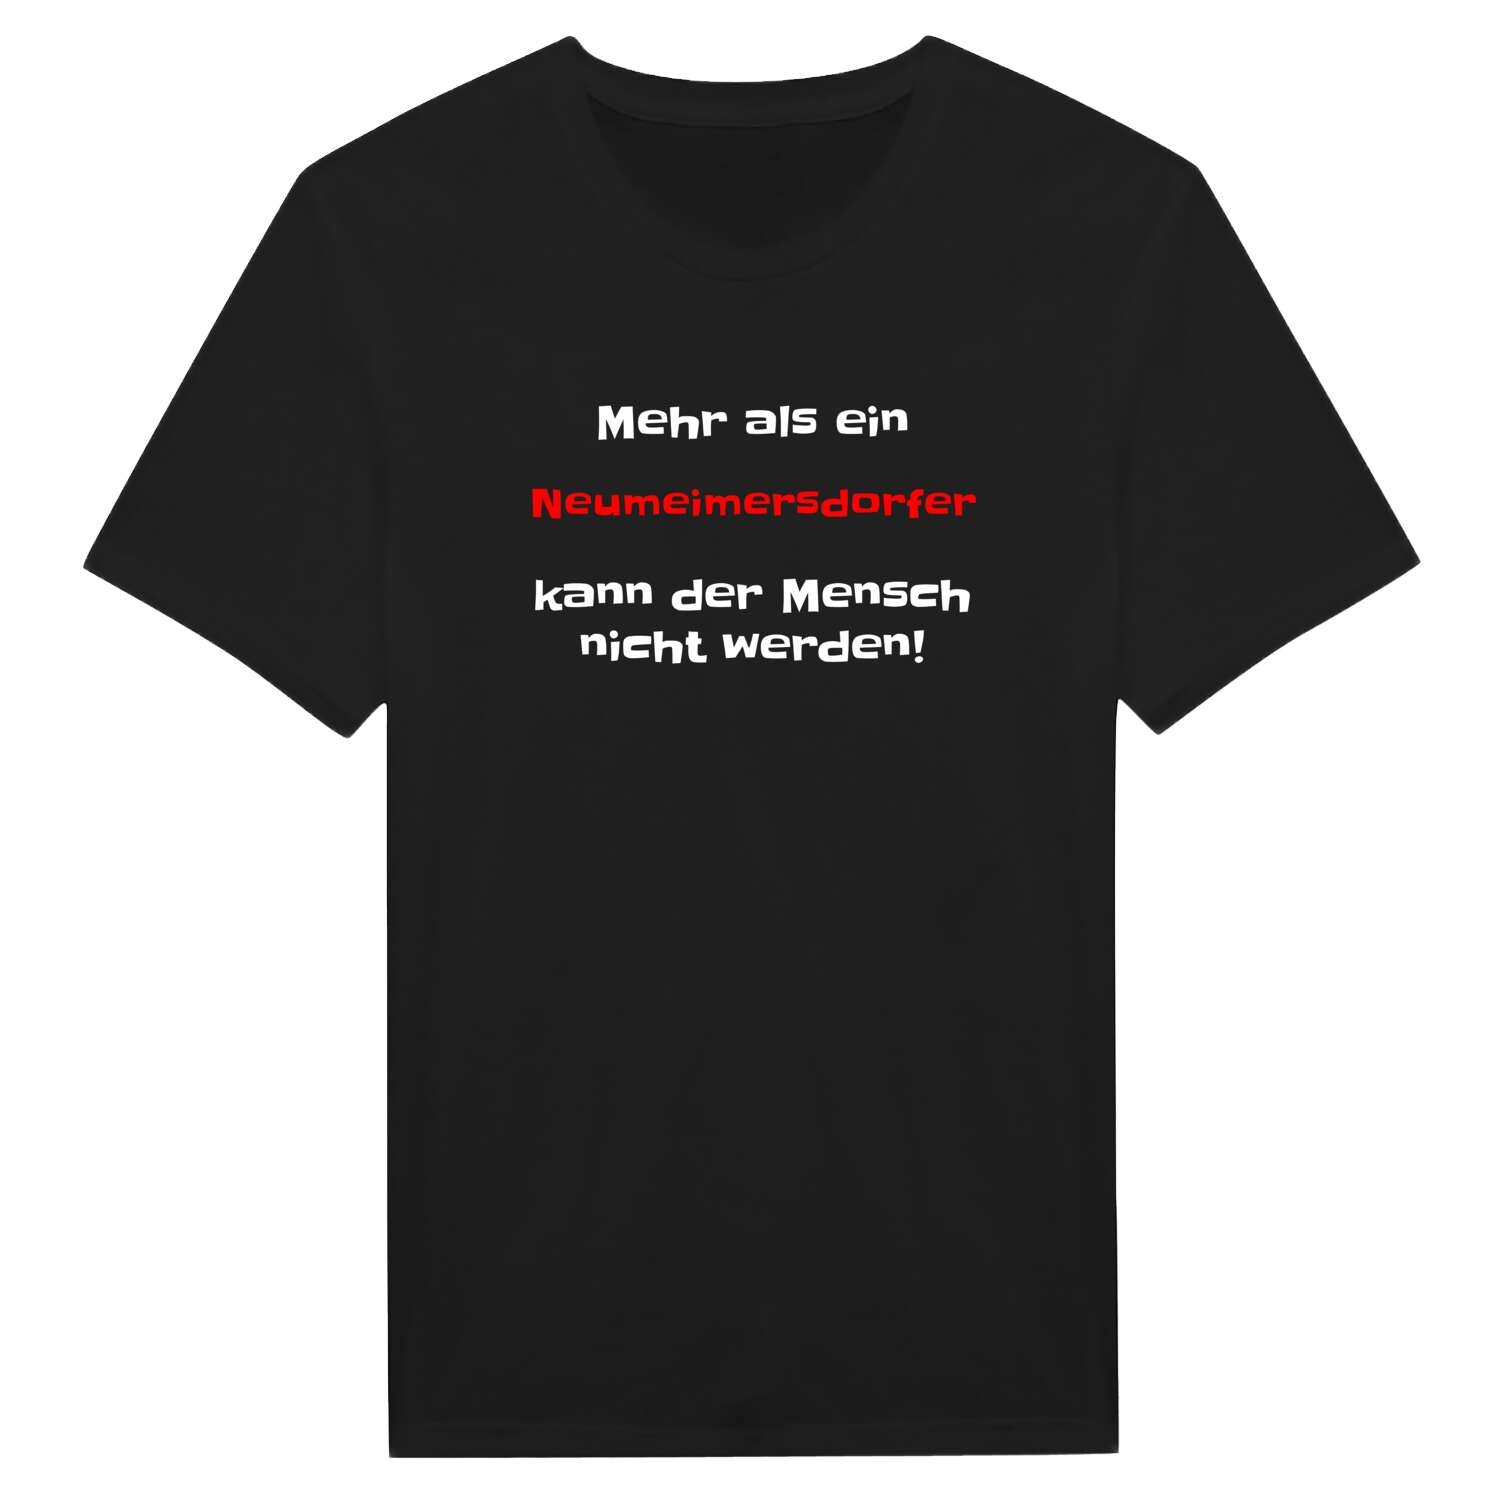 Neumeimersdorf T-Shirt »Mehr als ein«